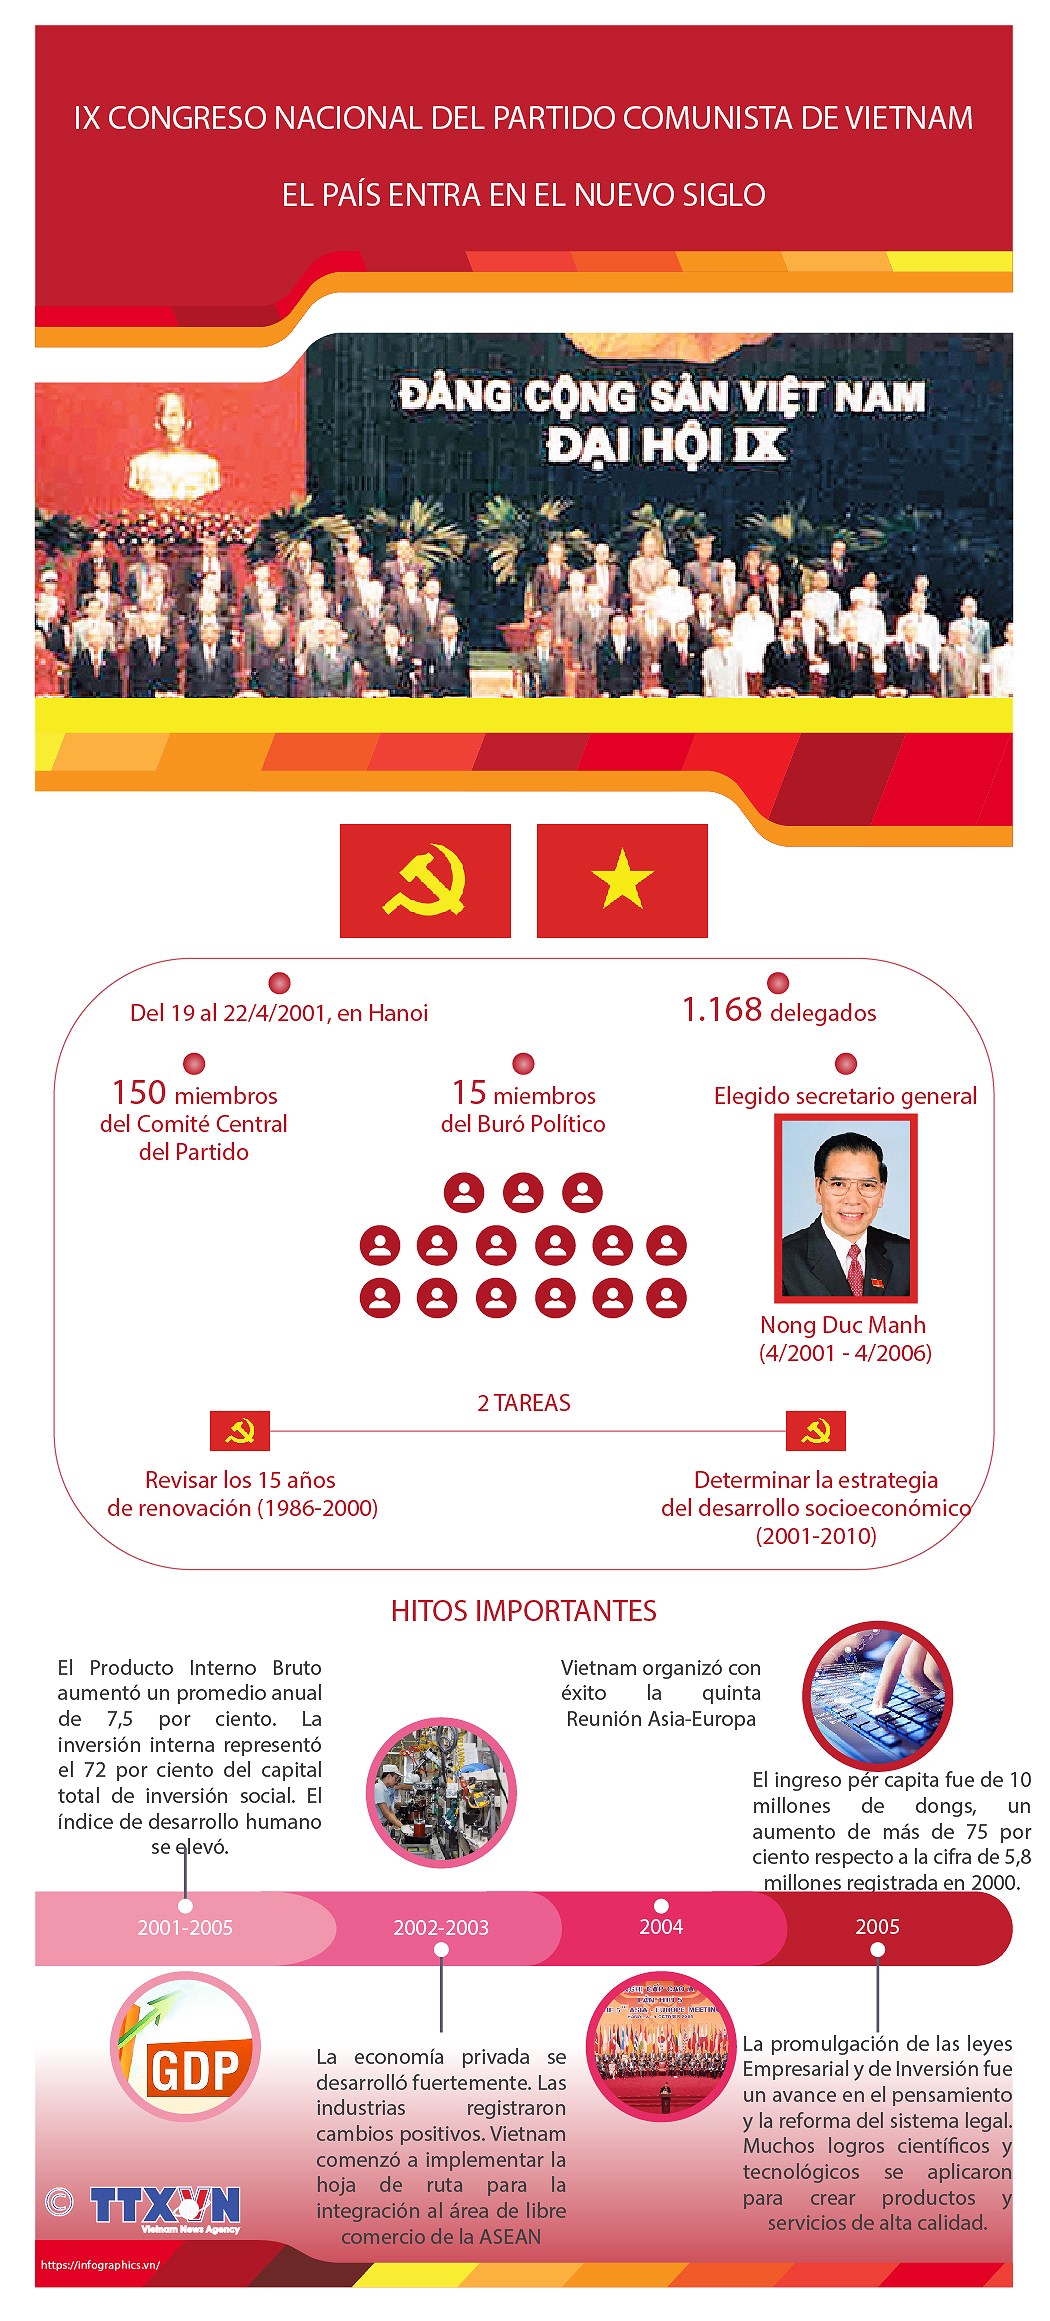 El IX Congreso Nacional del Partido Comunista de Vietnam: El pais entra en el nuevo siglo hinh anh 1